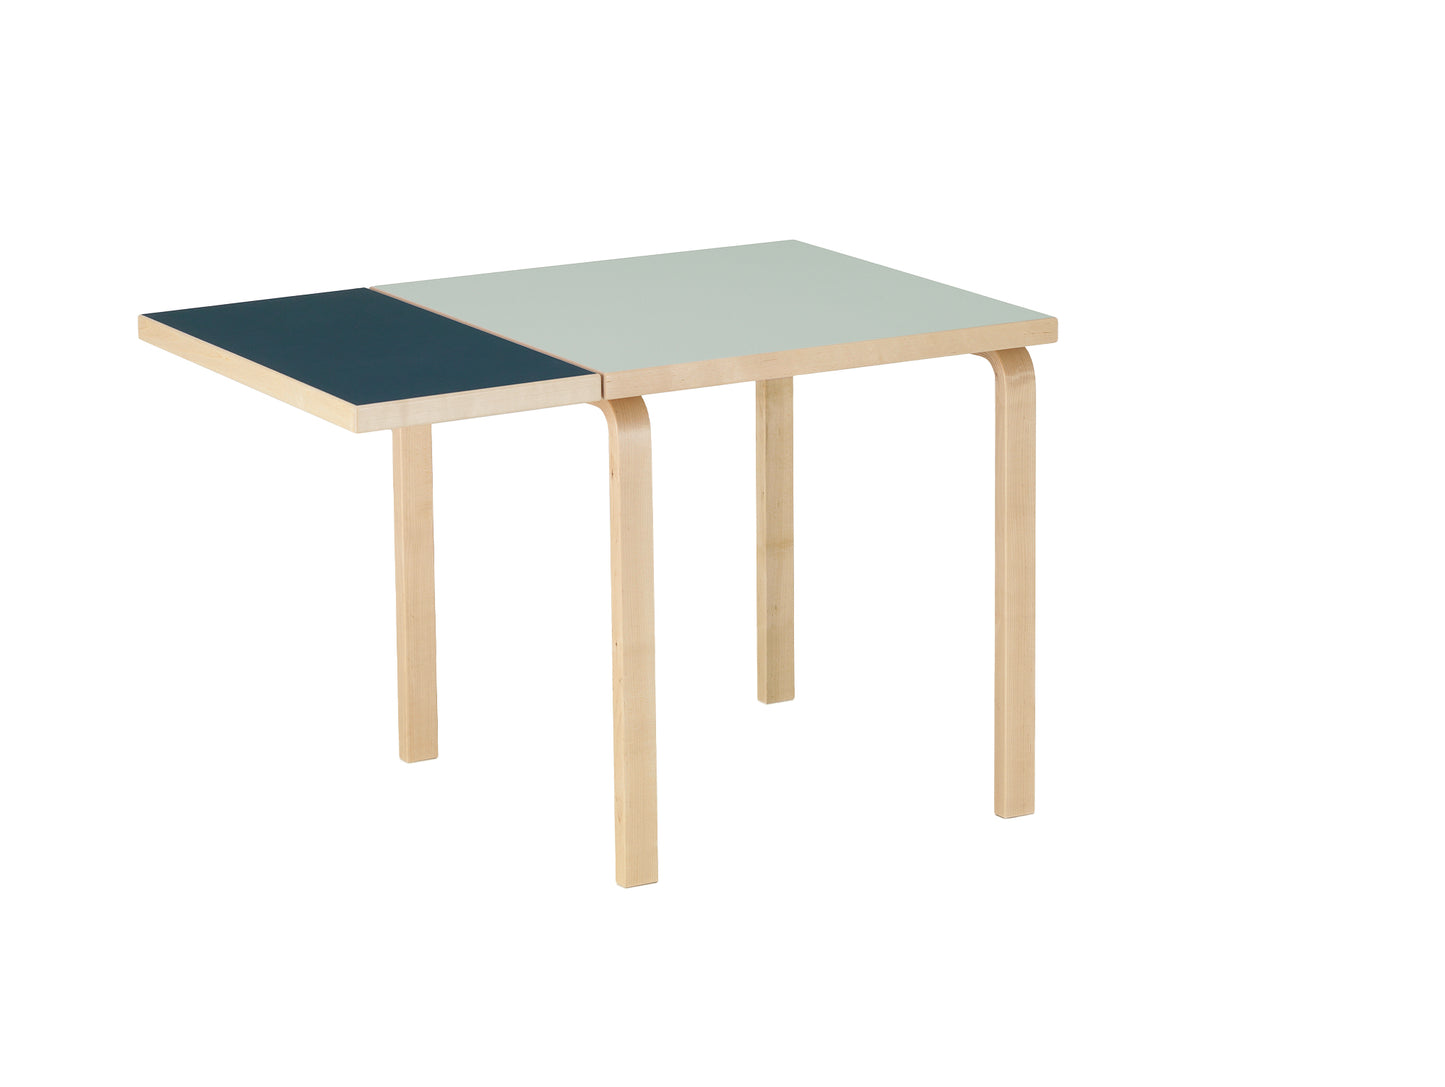 Aalto Table Foldable by Artek - Top: Vapour Linoleum / Drop Leaf: Smokey Blue Linoleum